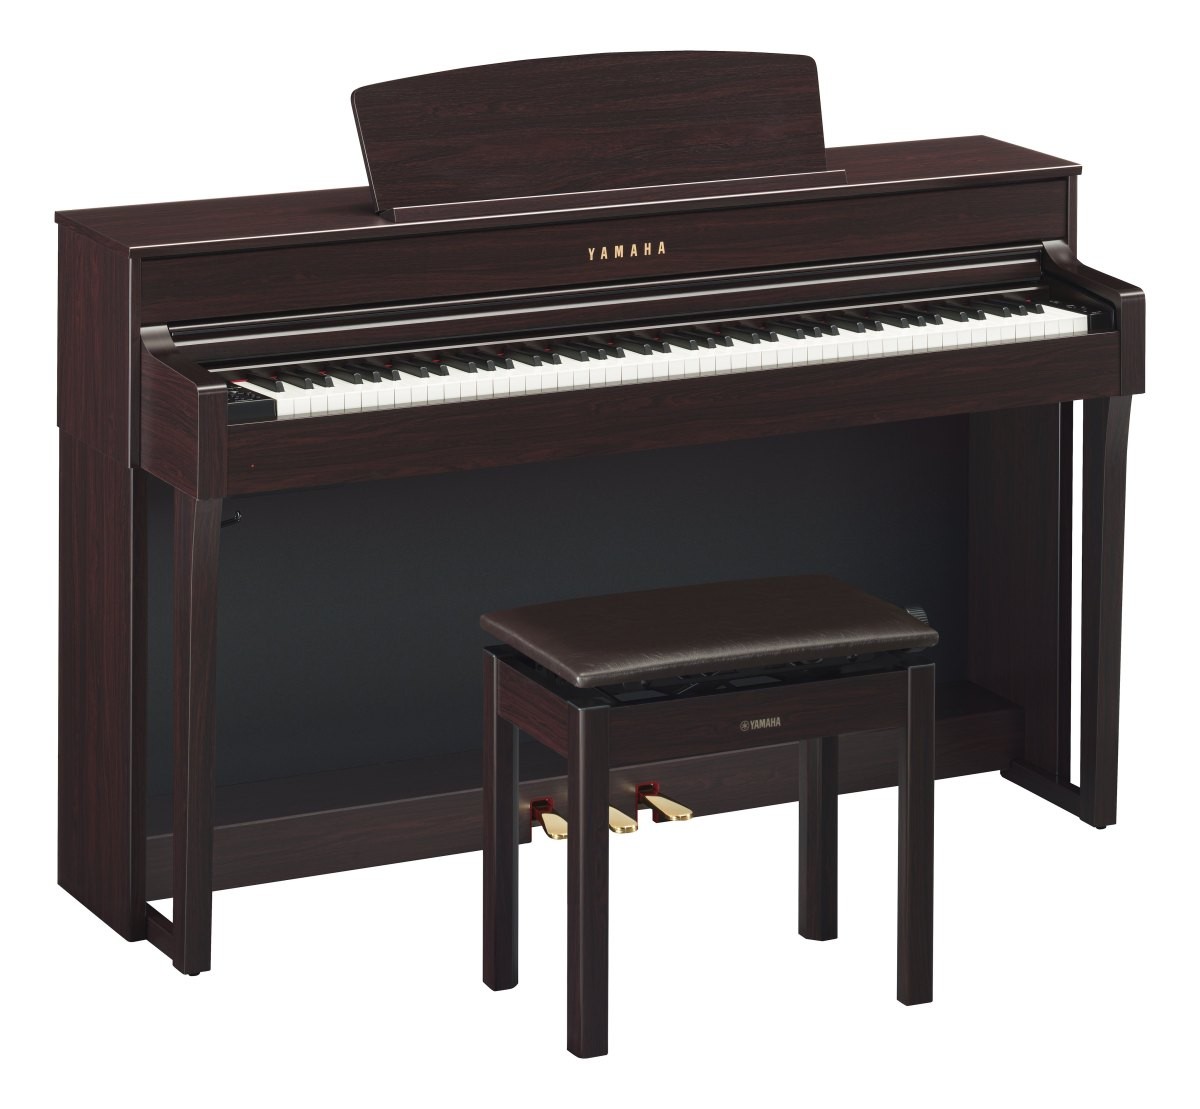 ヤマハ 電子ピアノ クラビノーバ CLP-645R ニューダークローズウッド調の商品画像